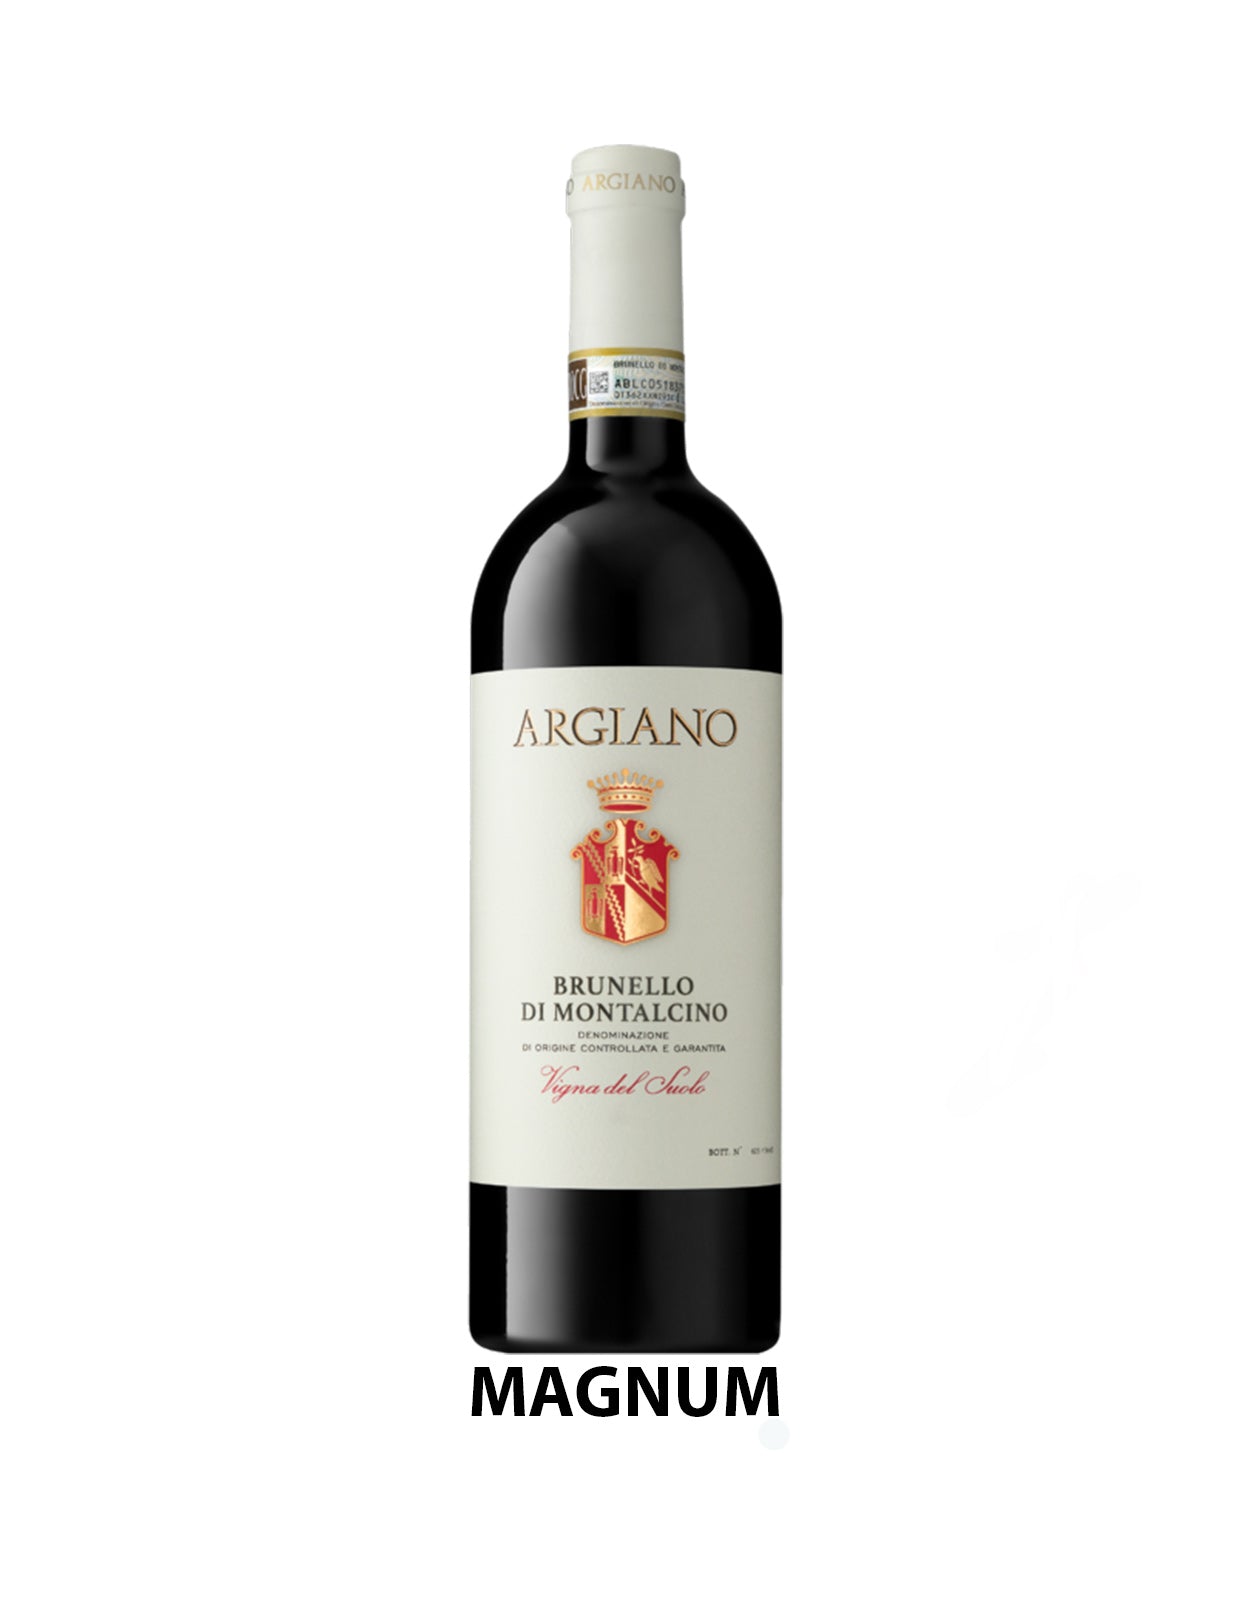 Argiano Brunello Di Montalcino Vigna Del Suolo 2016 - 1.5 Litre Bottle